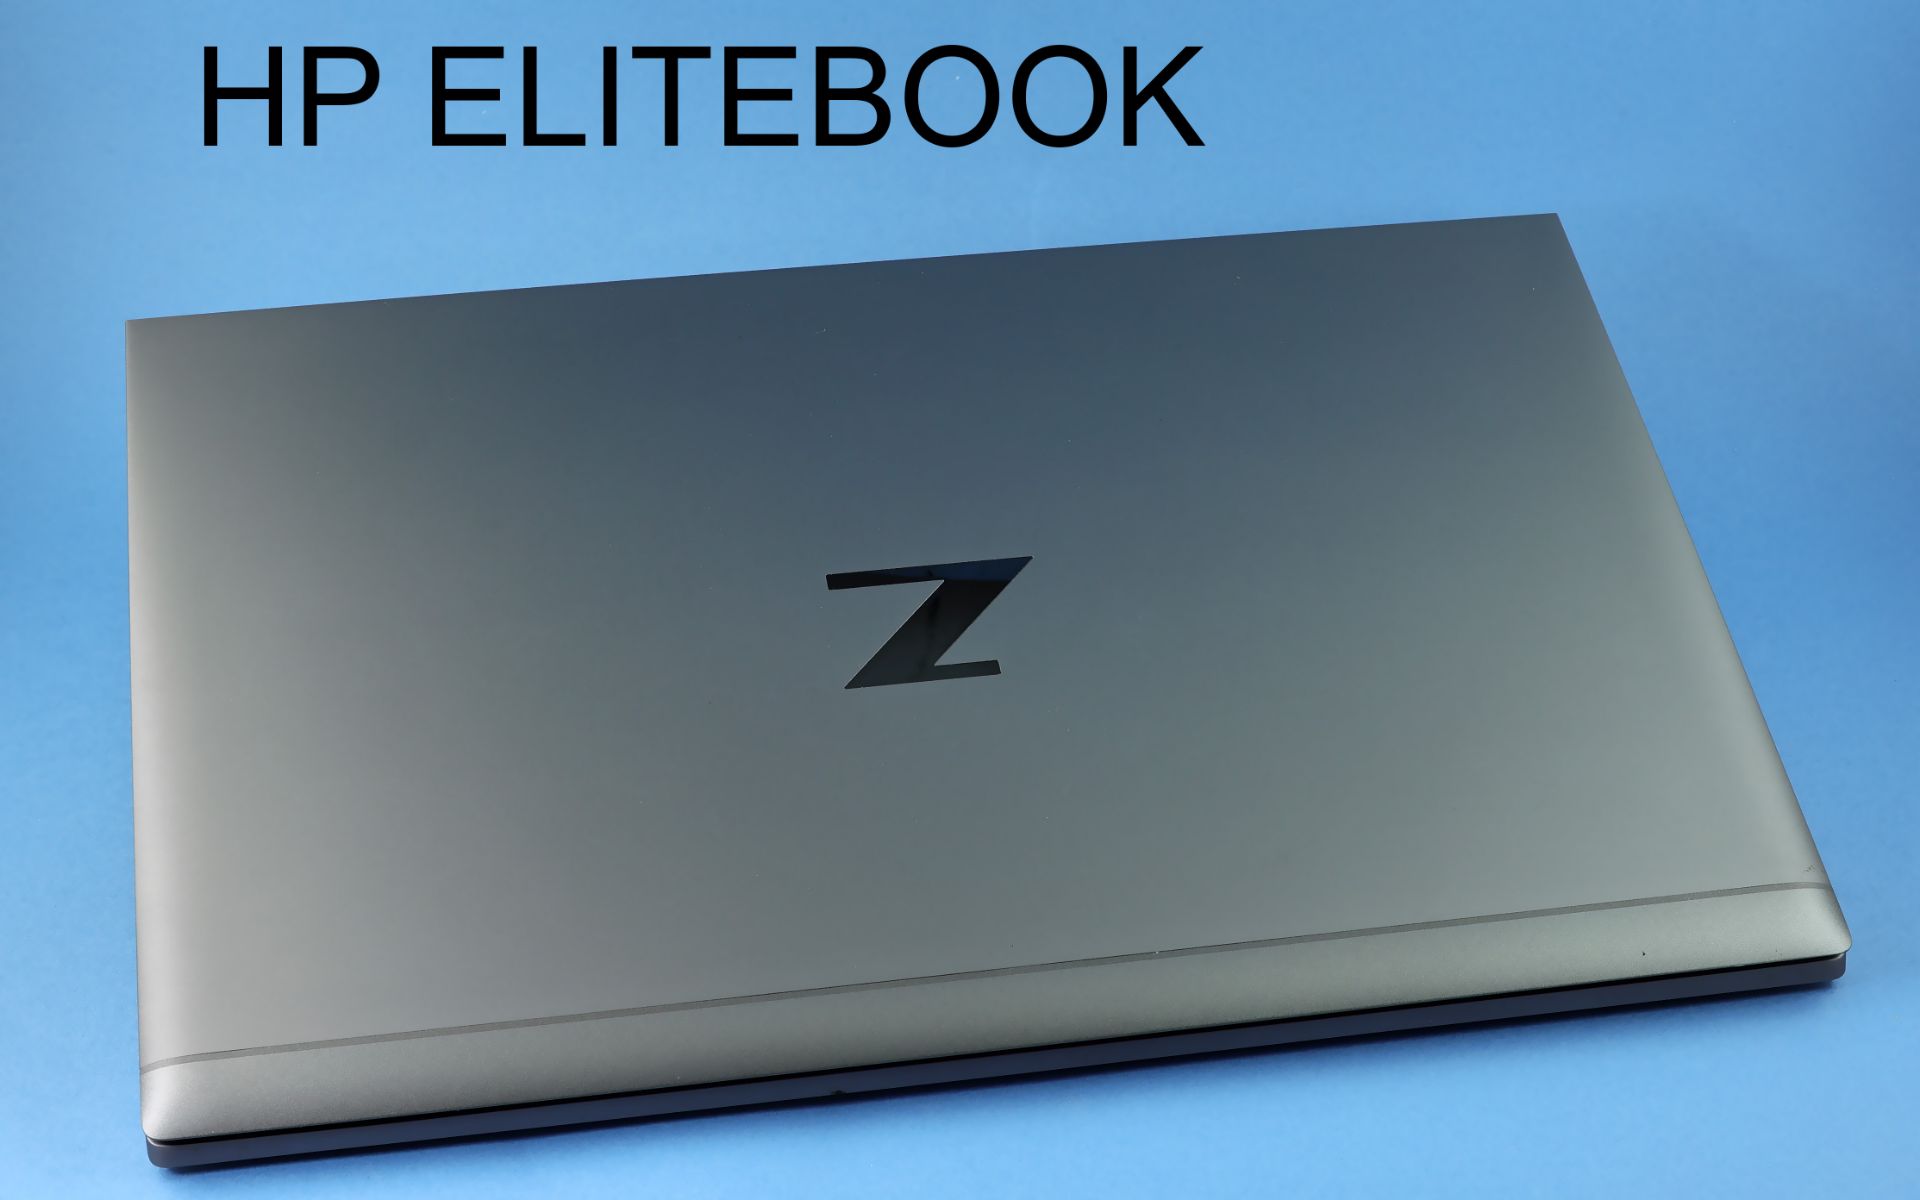 HP Elitebook 32GB Intel Core i7 11. Gen., ohne Karton und ohne Zubehoer